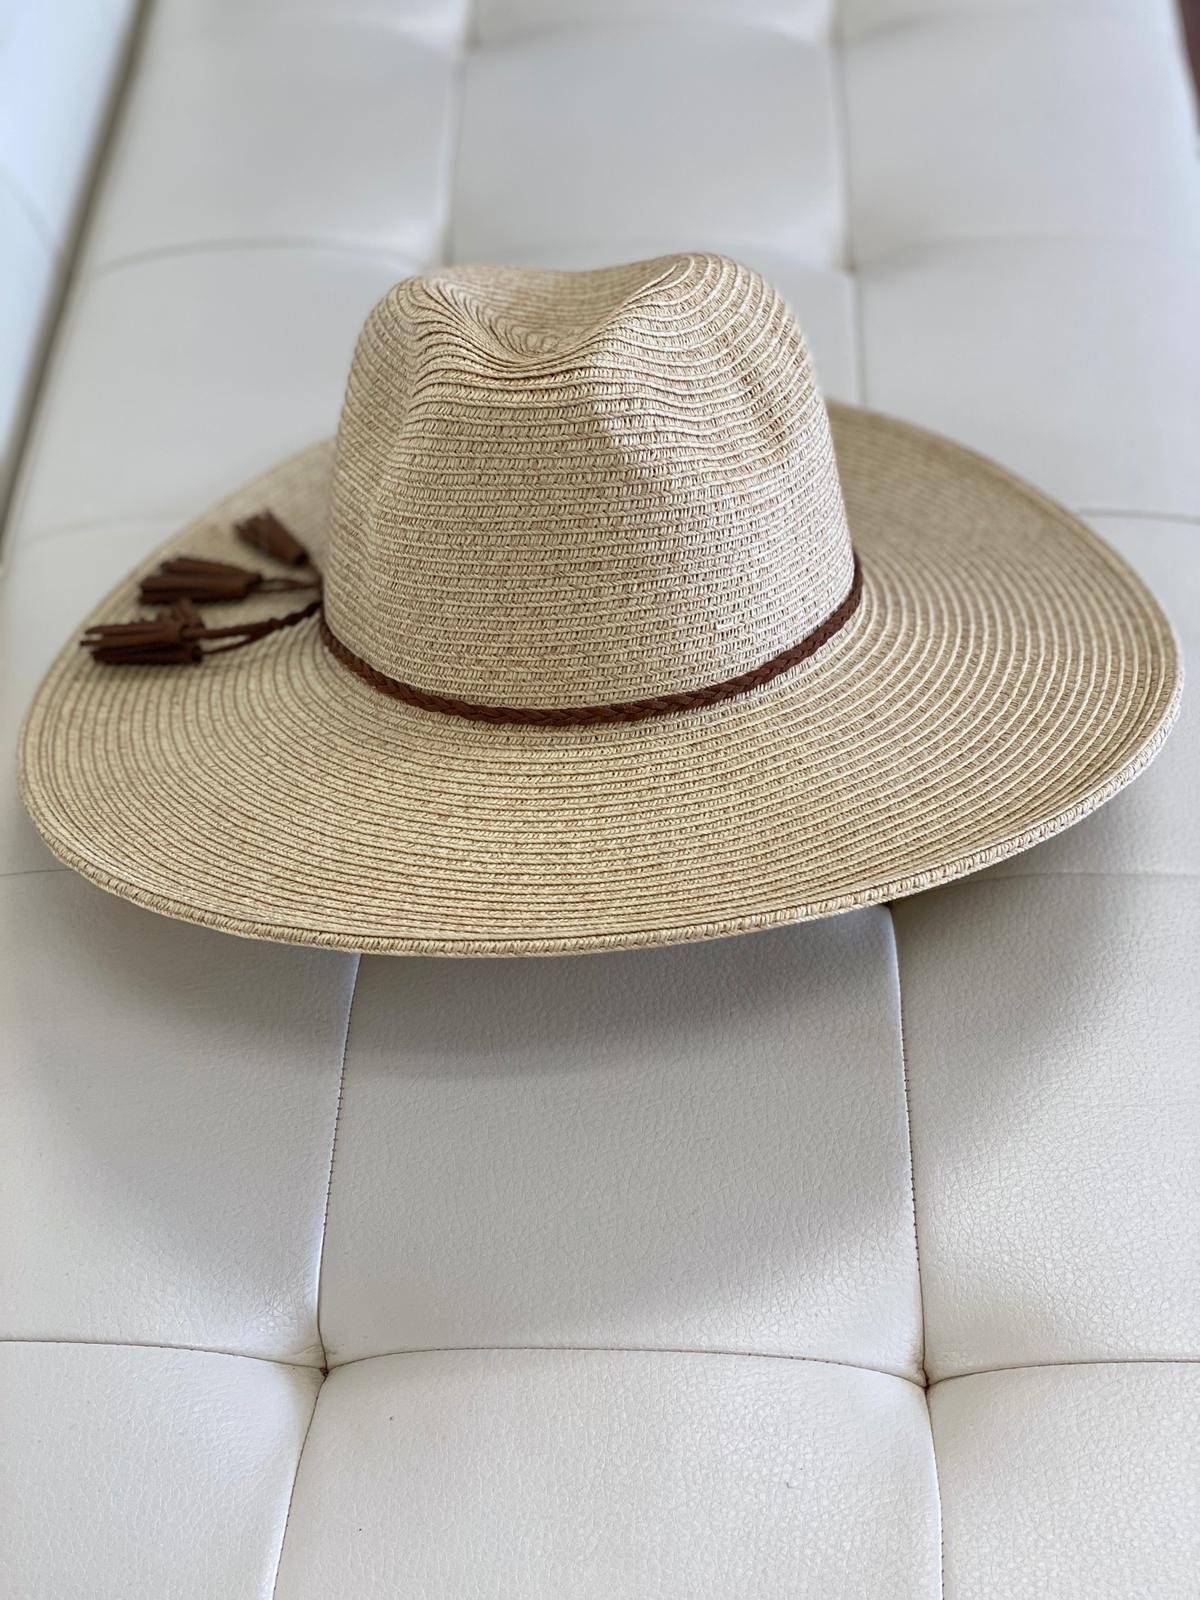 Cancun hat